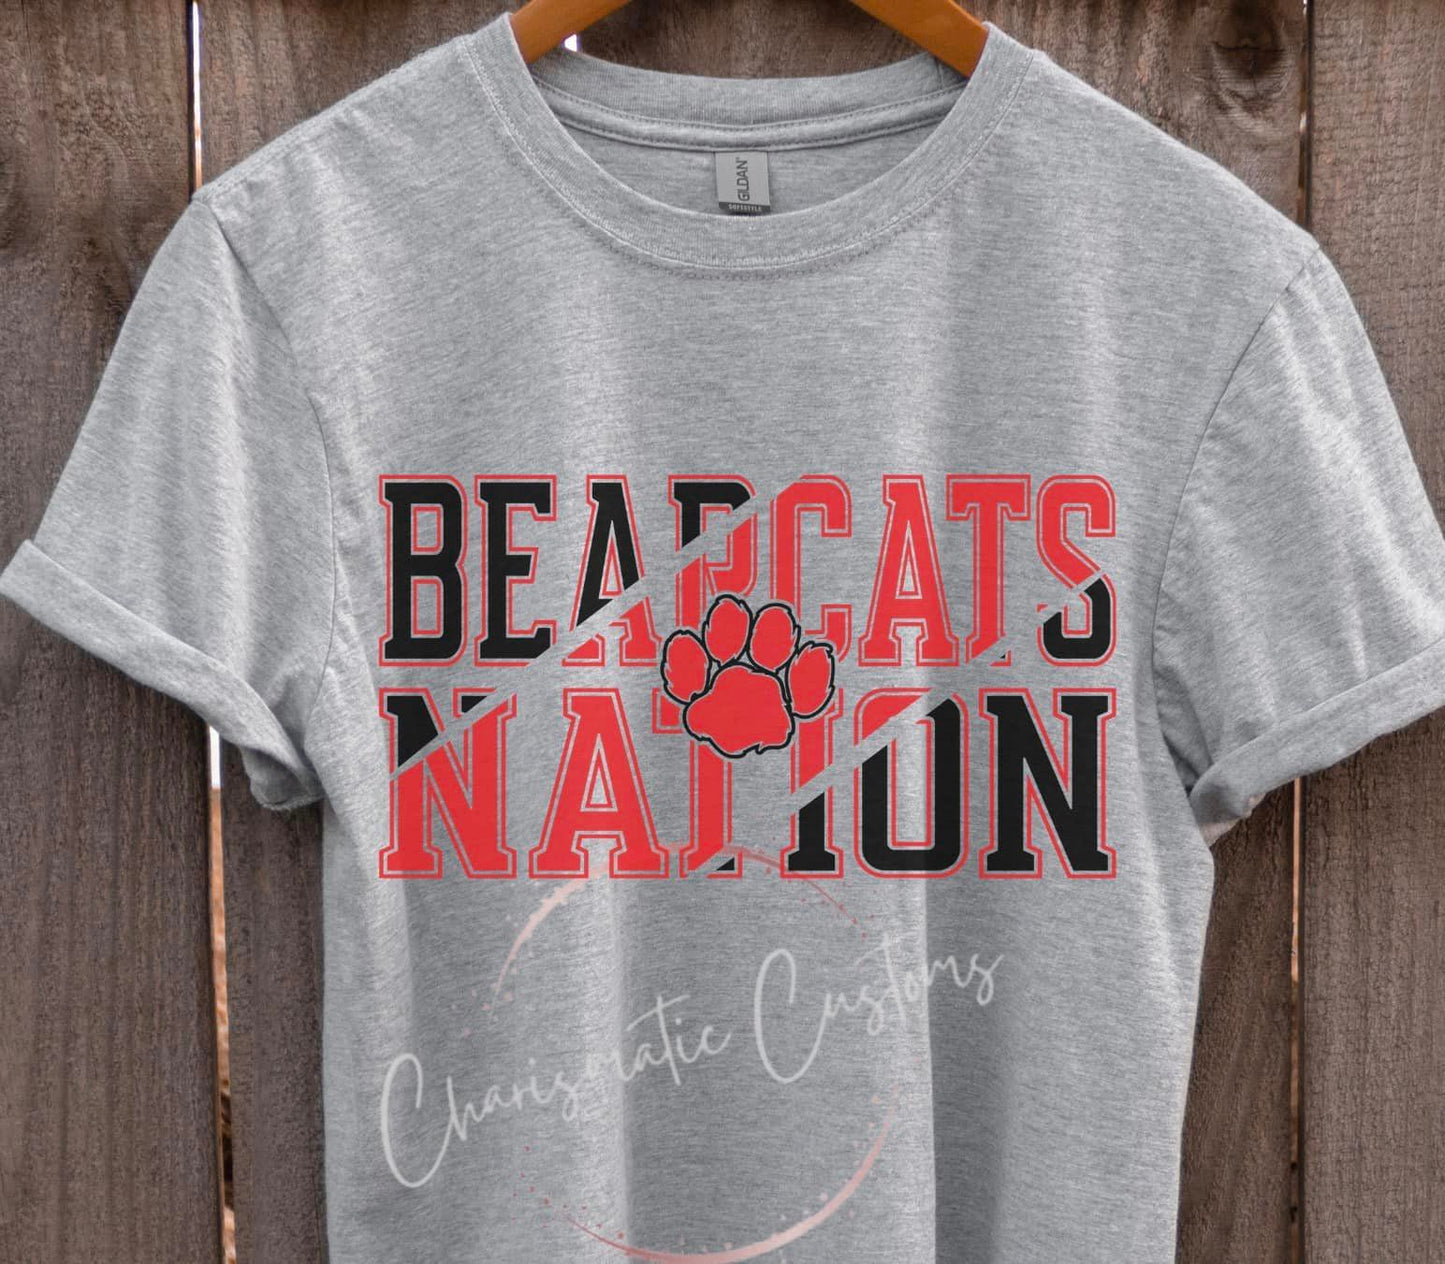 Bearcat Nation